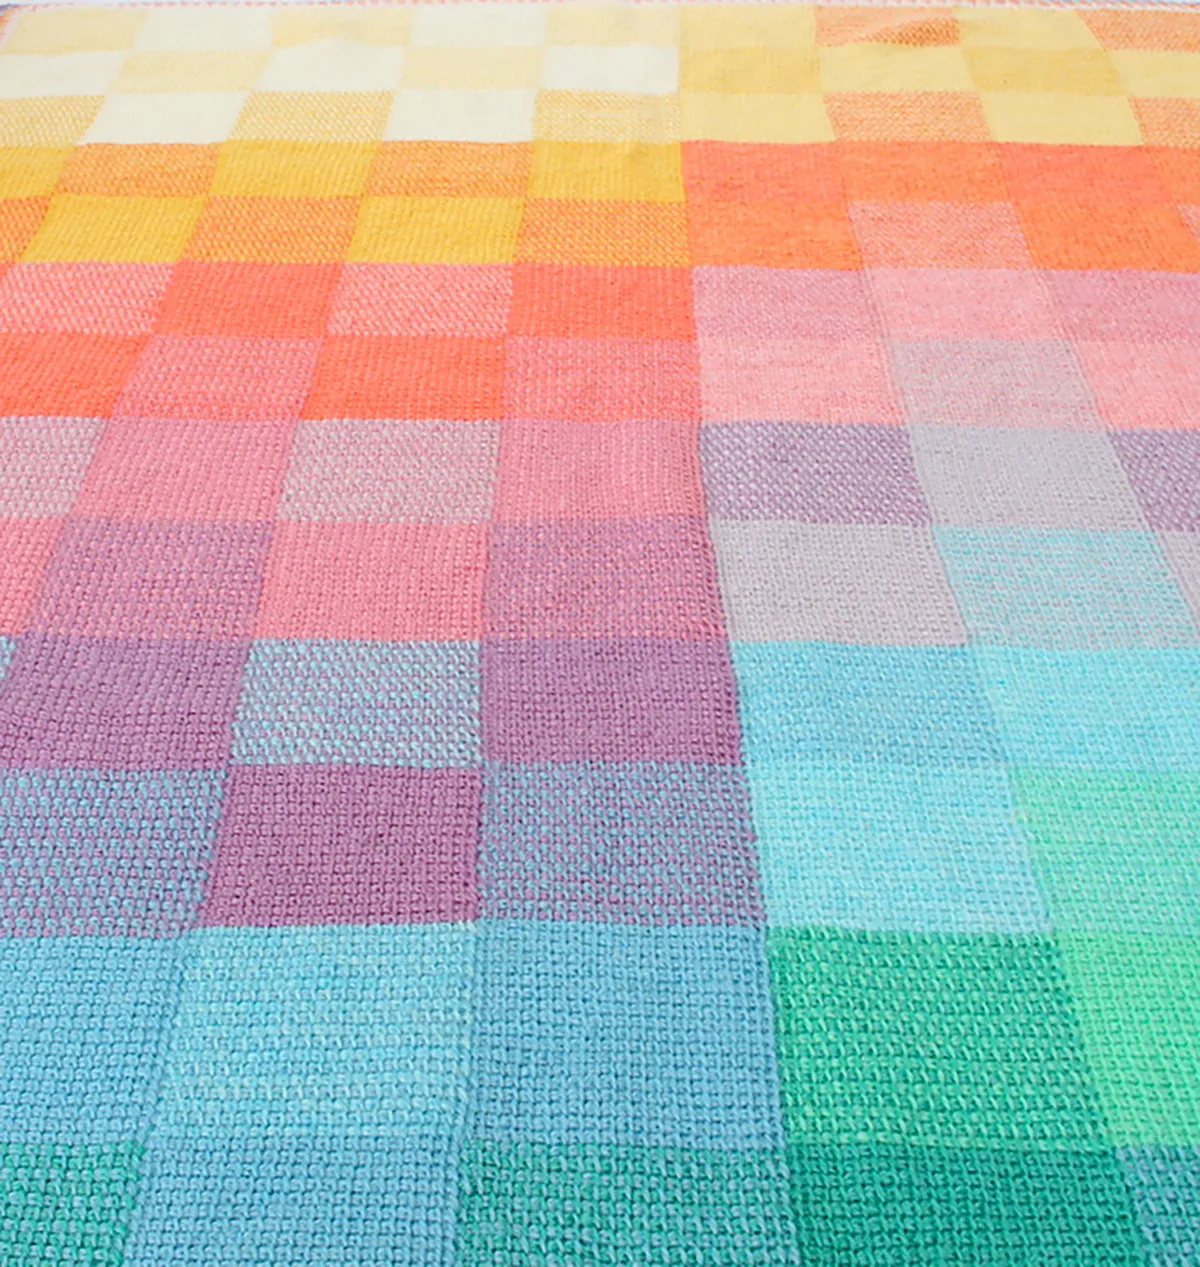 Tunisian crochet blanket pattern Sunset